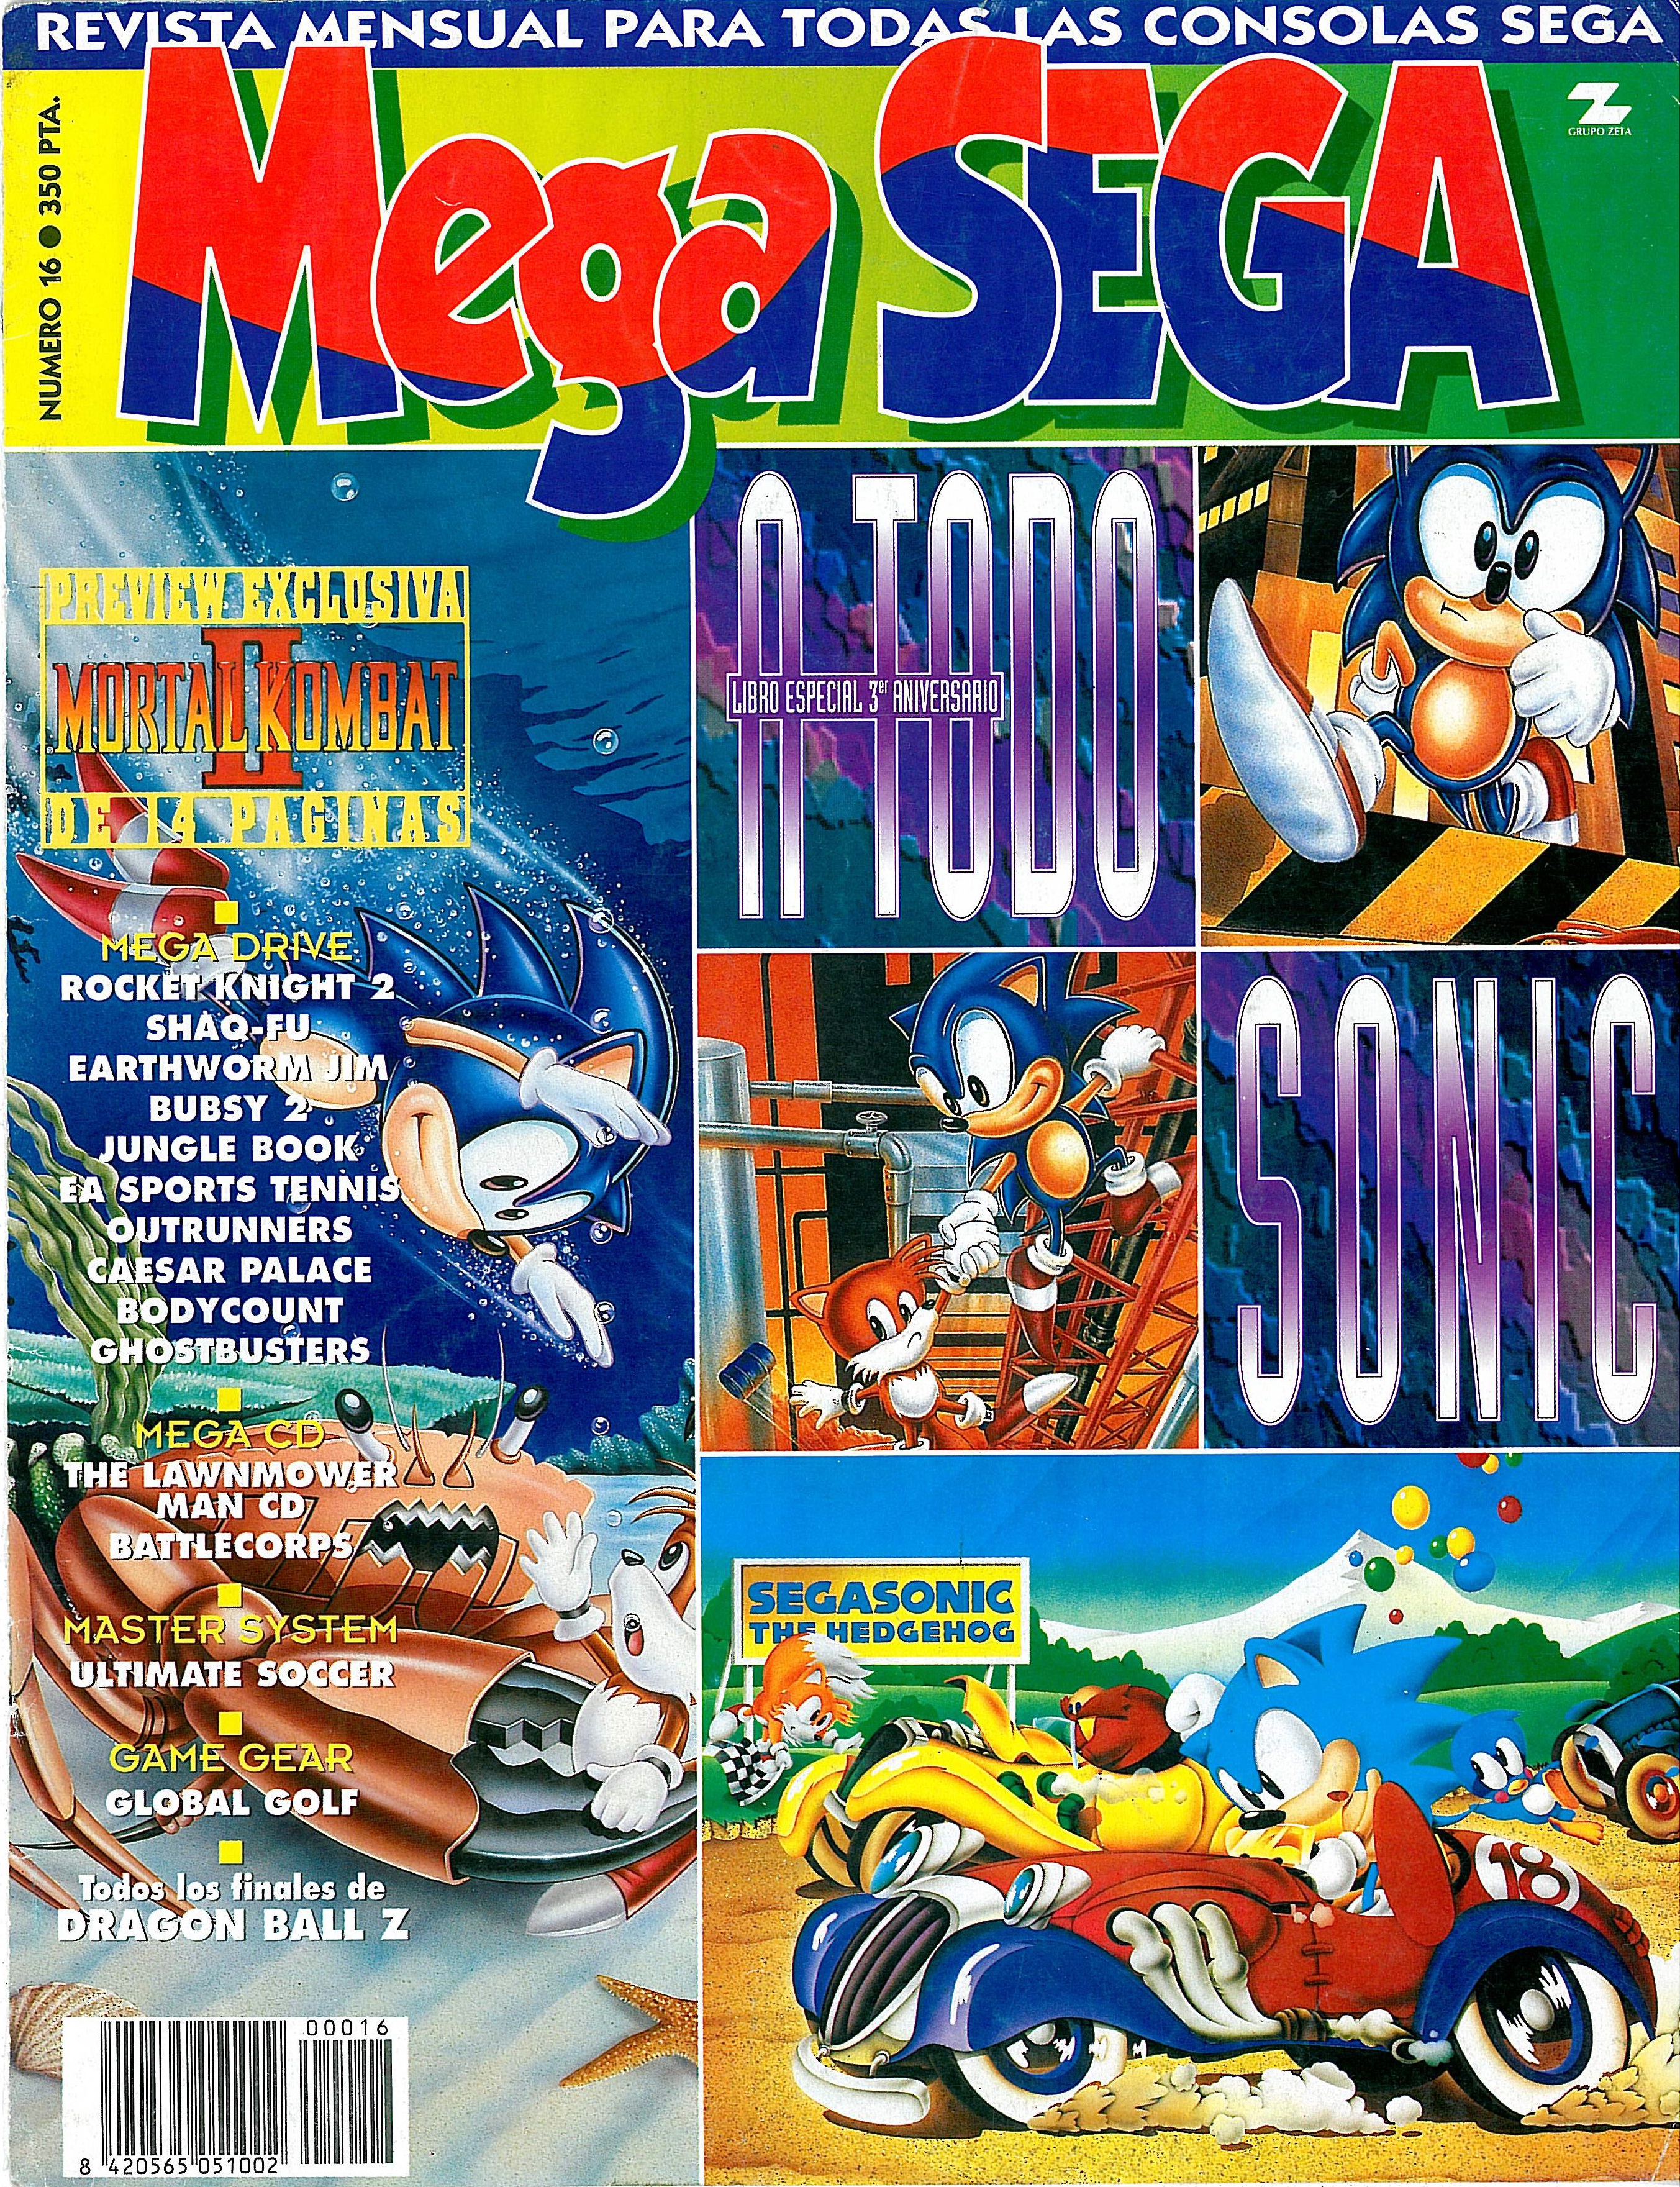 MegaSega 16 cover.jpg